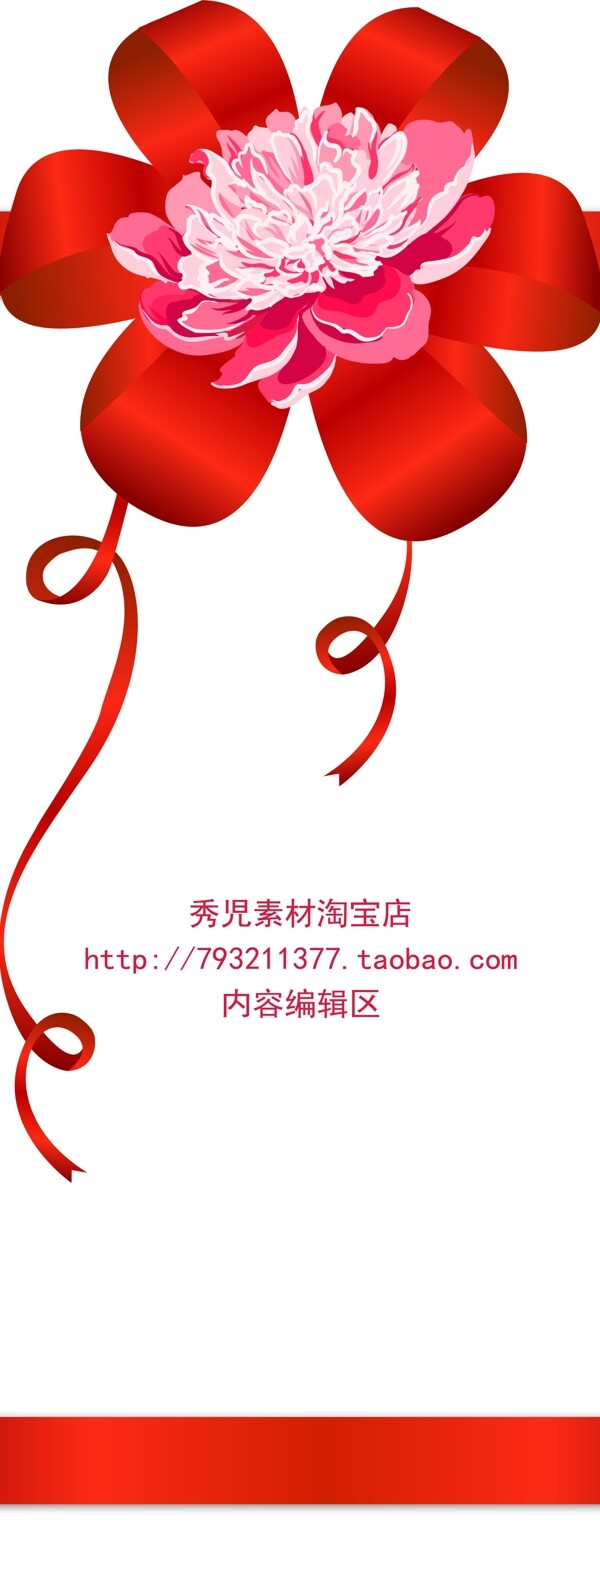 红色牡丹精美中国结展架设计海报素材画面